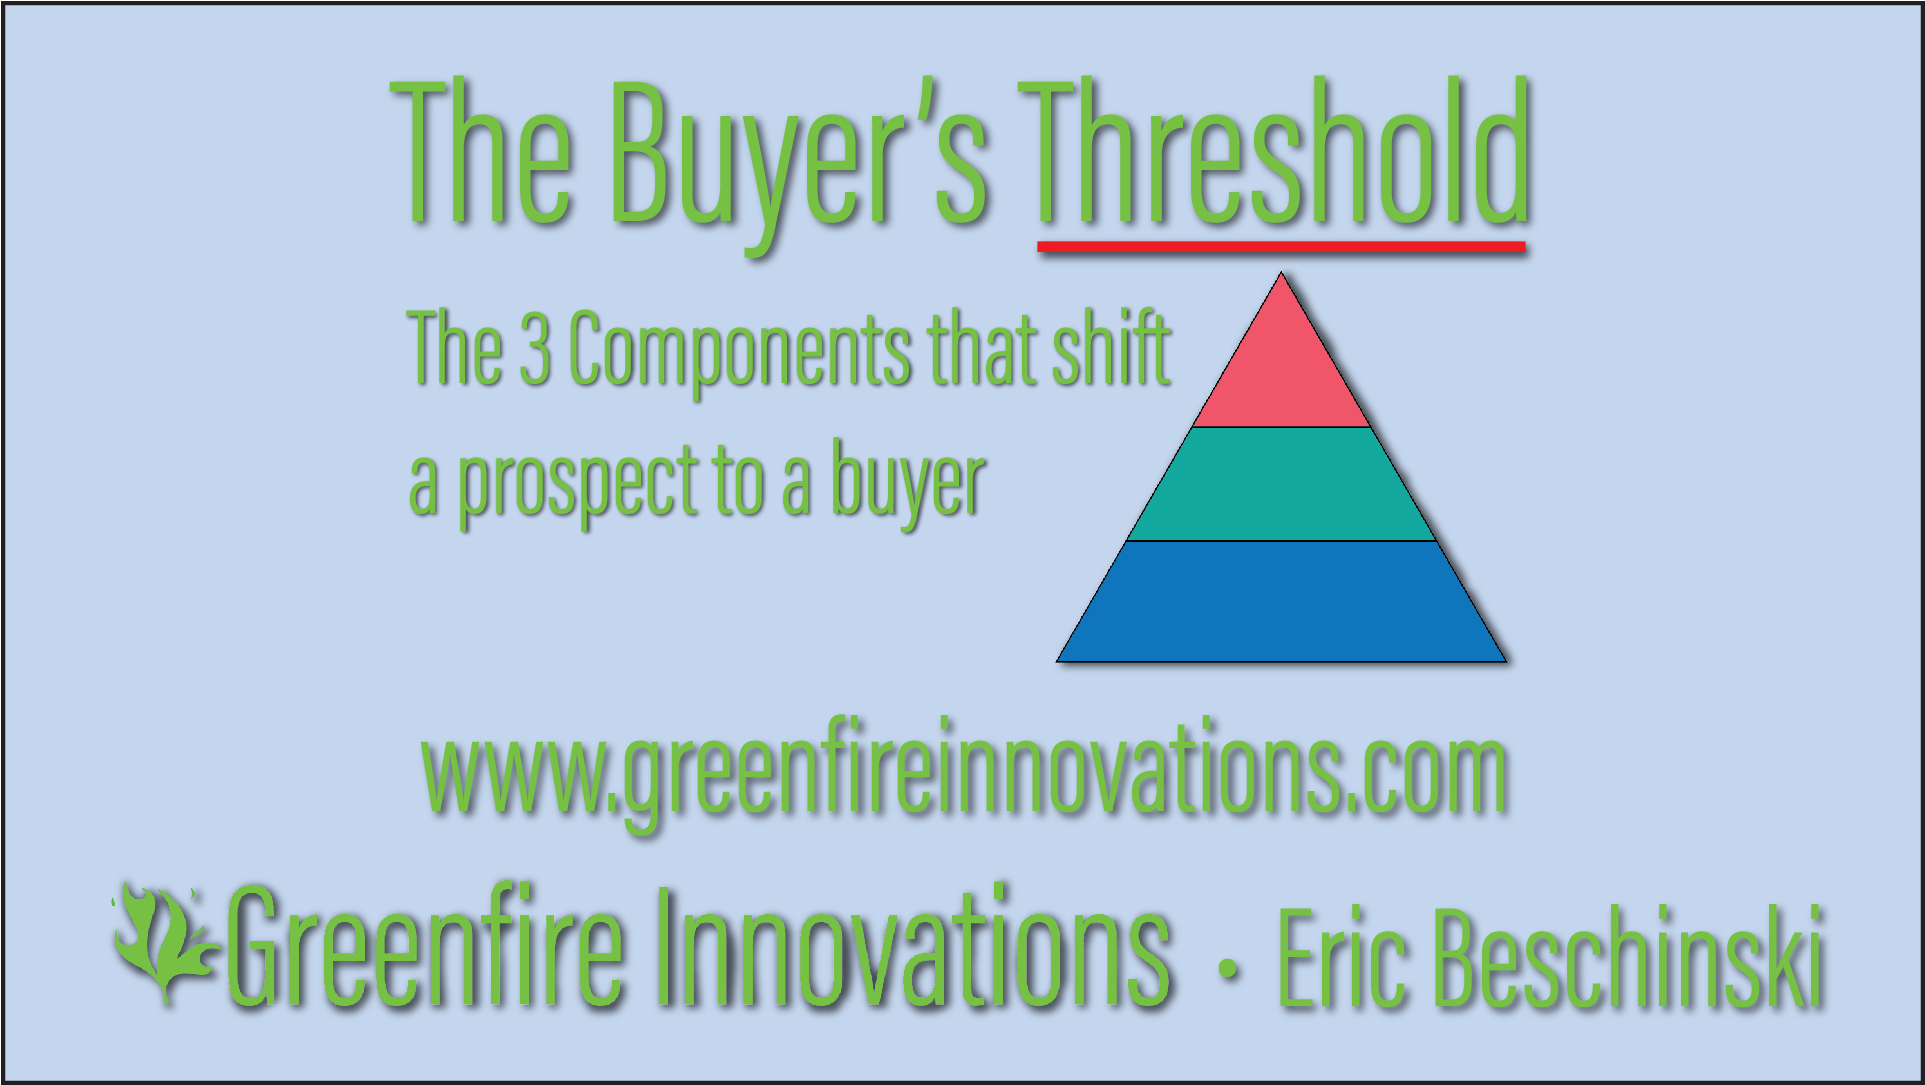 The Buyer’s Threshold